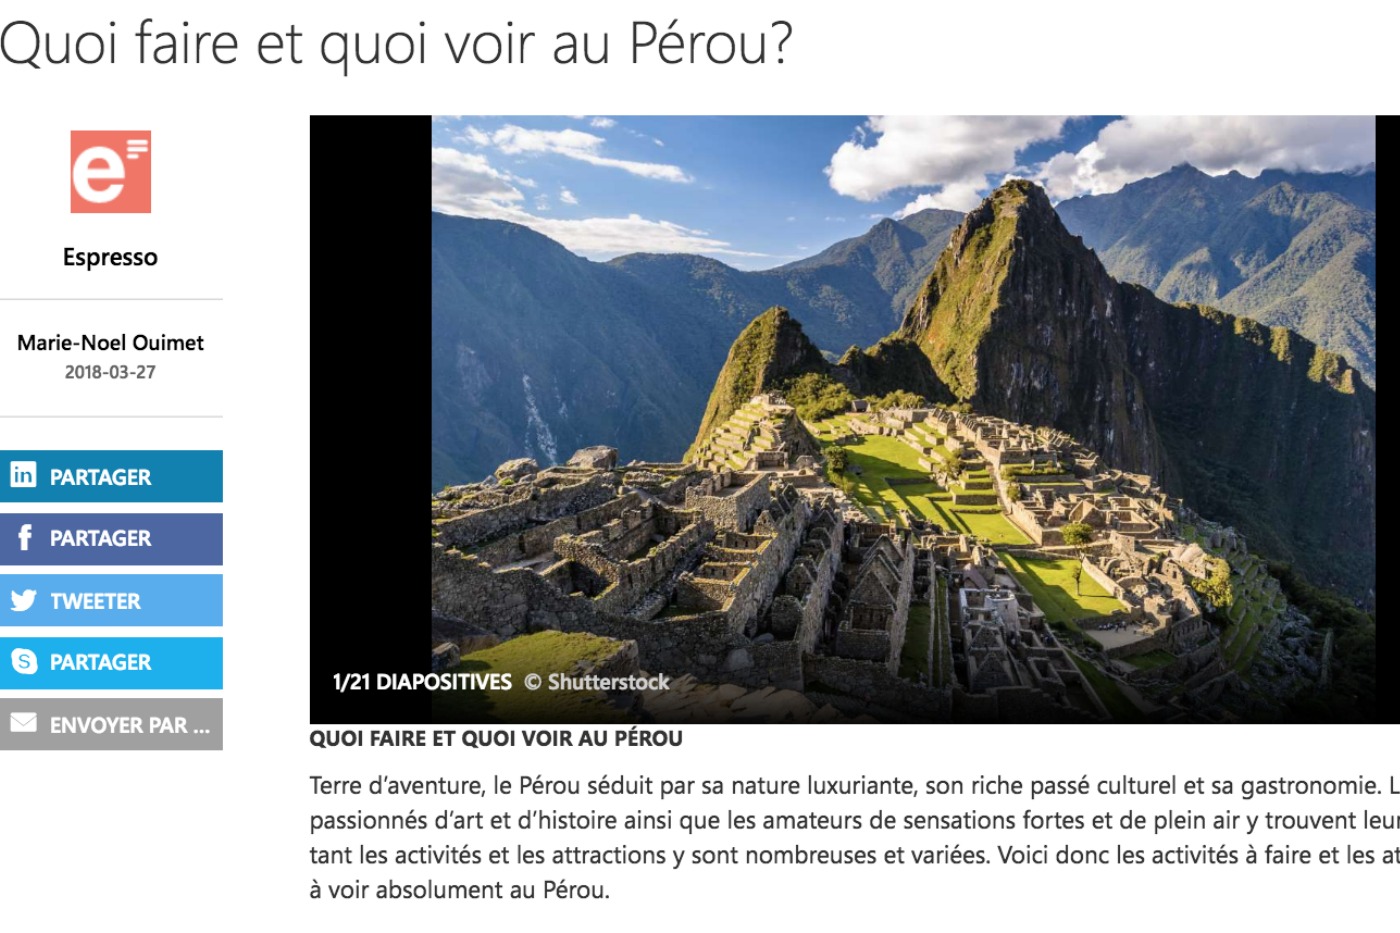 Quoi voir et que faire au Pérou sur MSN.com